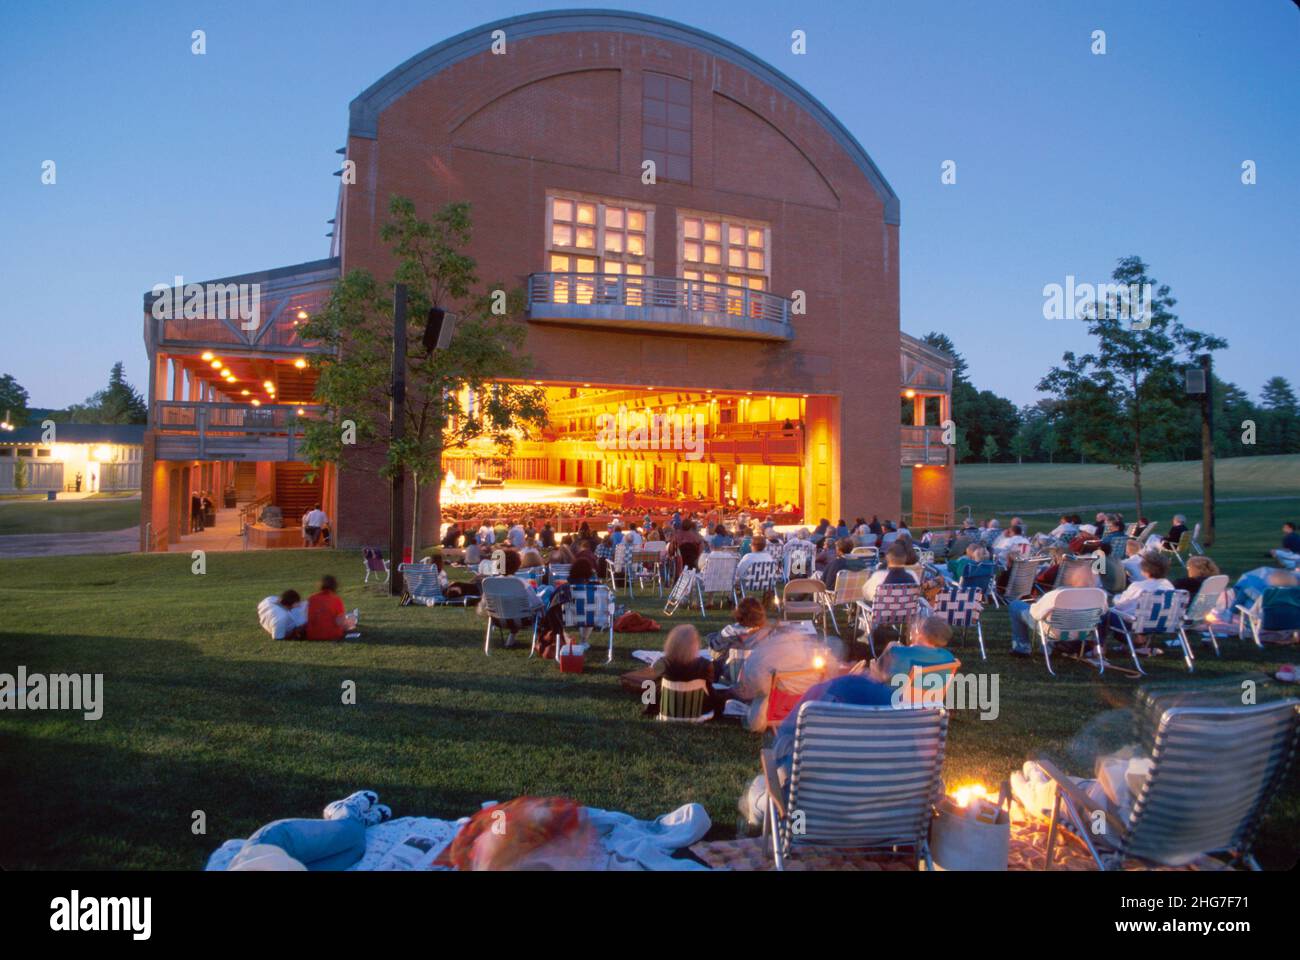 Lenox Massachusetts, Tanglewood Ozawa Hall concierto nocturno música clásica actuación al aire libre, césped sillas plegables audiencia familias escuchando Foto de stock